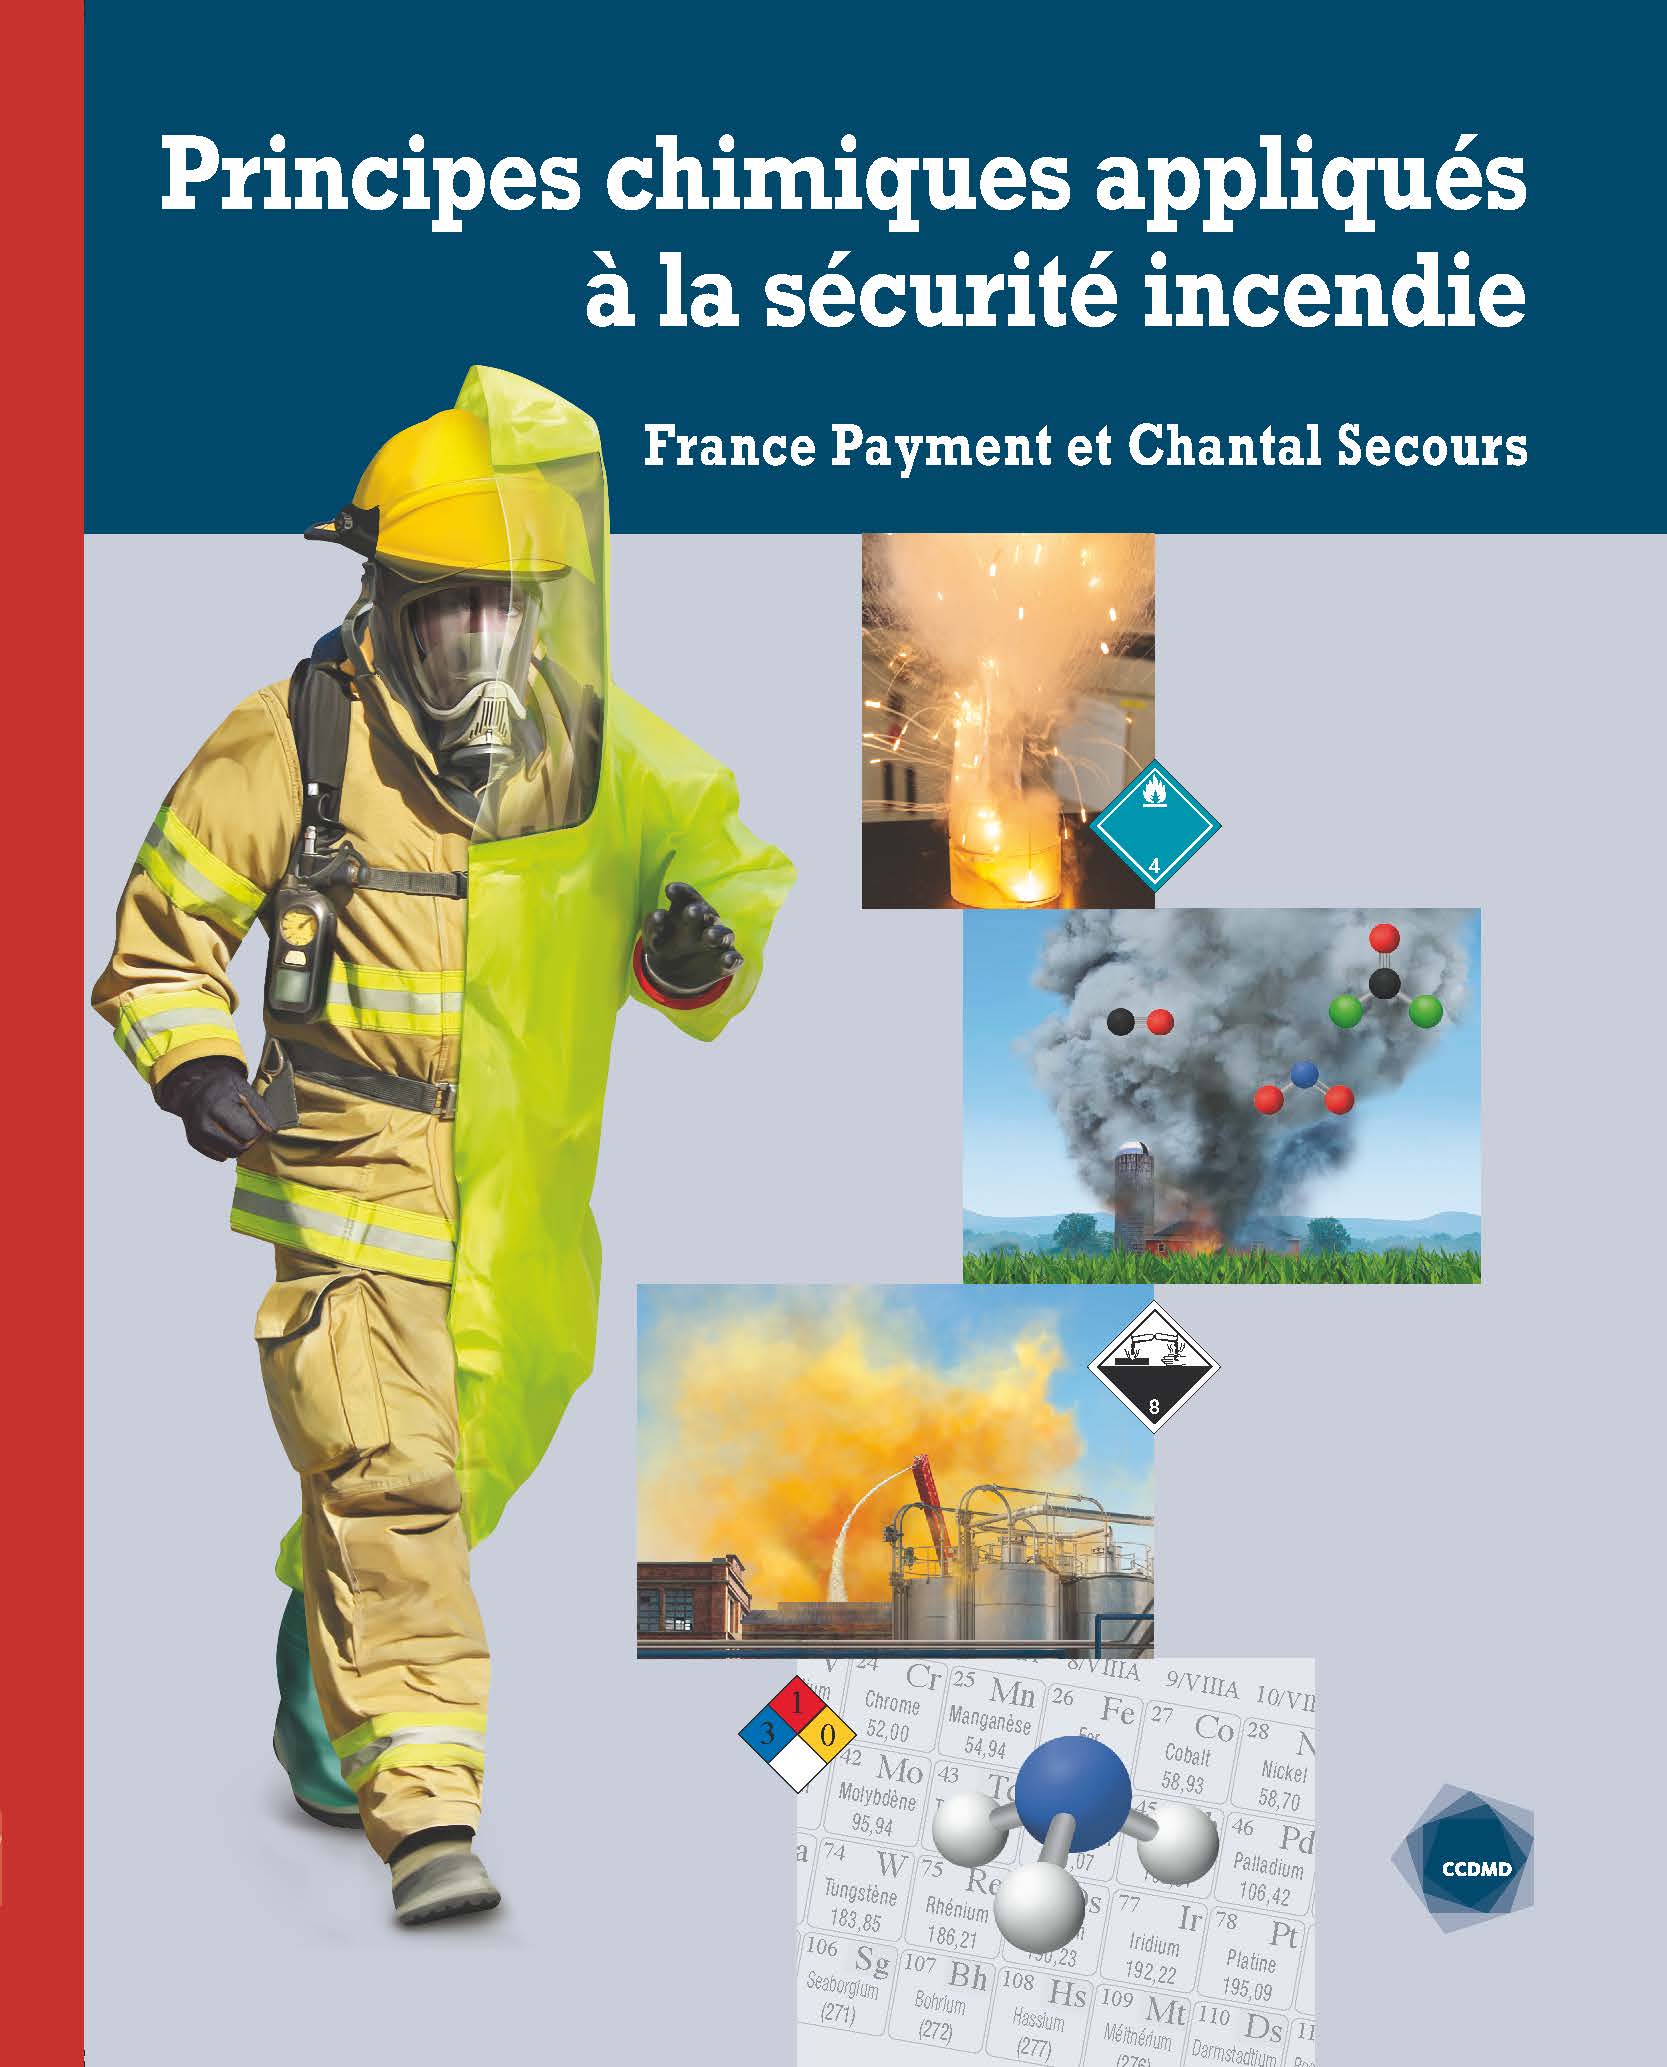 Image Principes chimiques appliqués à la sécurité incendie